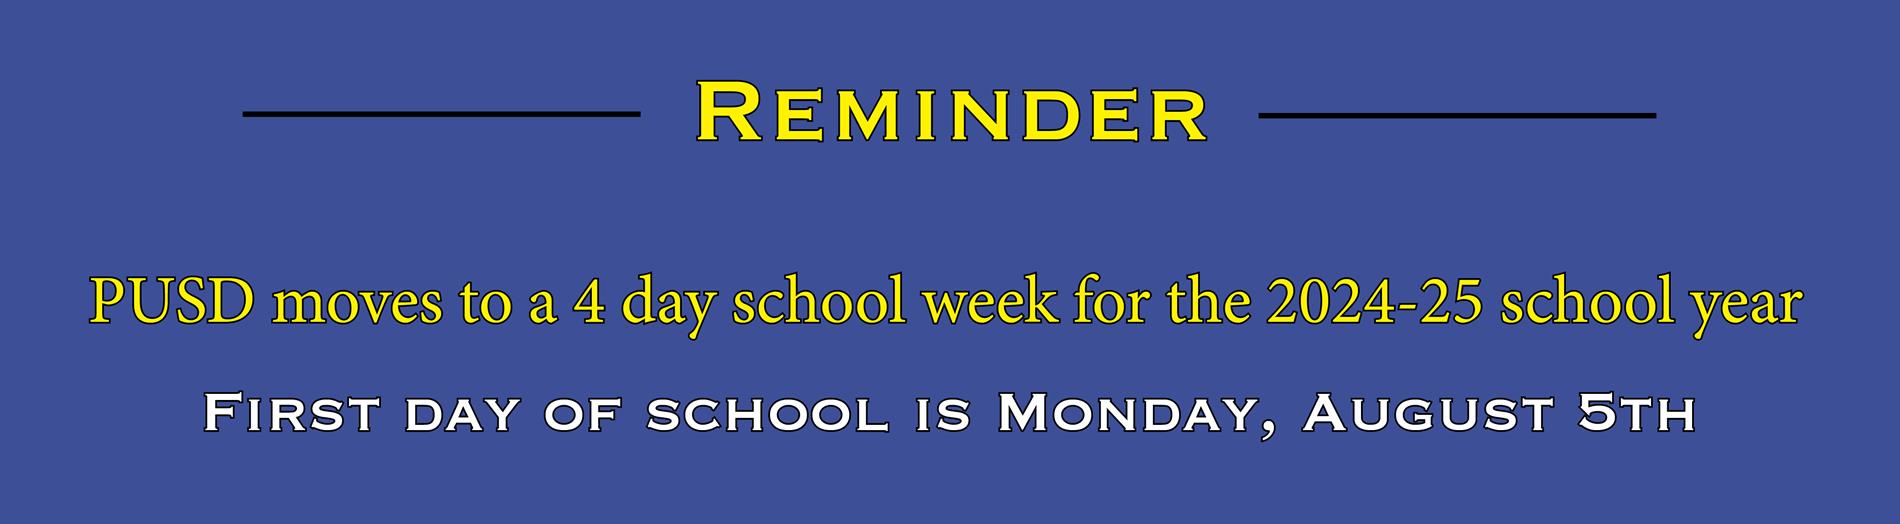 4 day school reminder